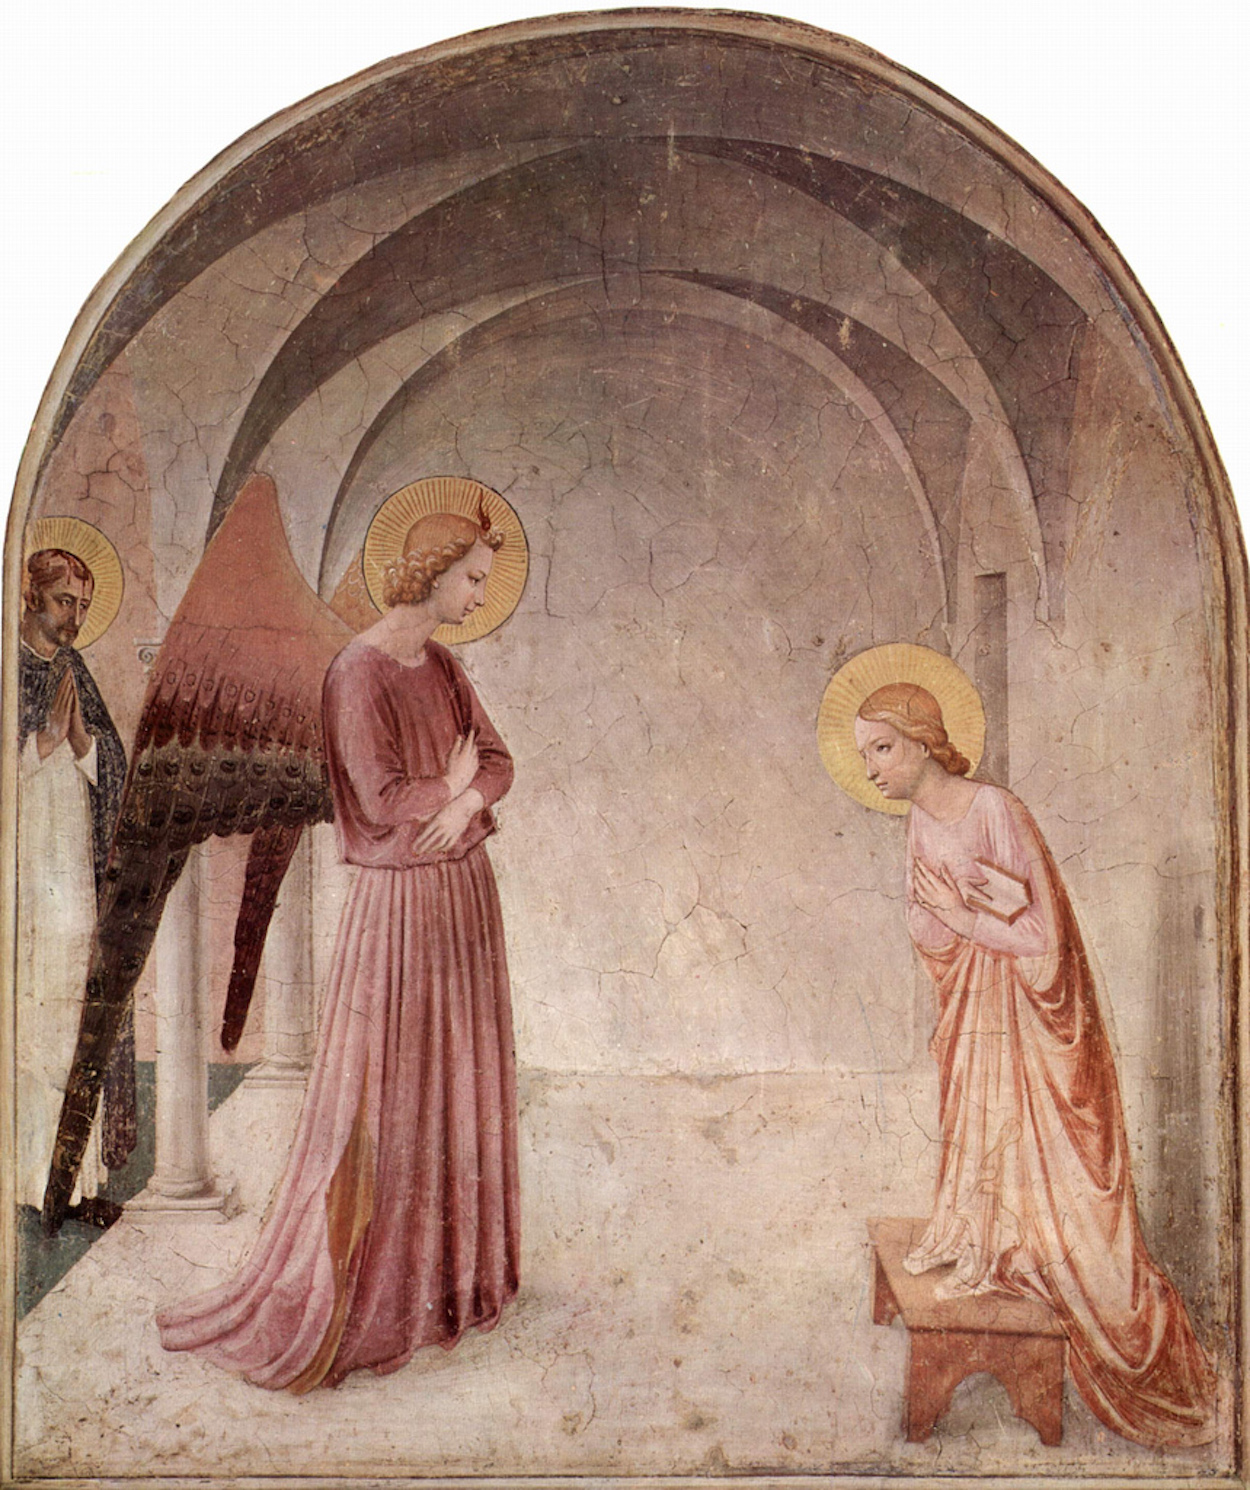 La Anunciación by Fra Angelico  - c. 1441 - 176 x 148 cm Museo di San Marco